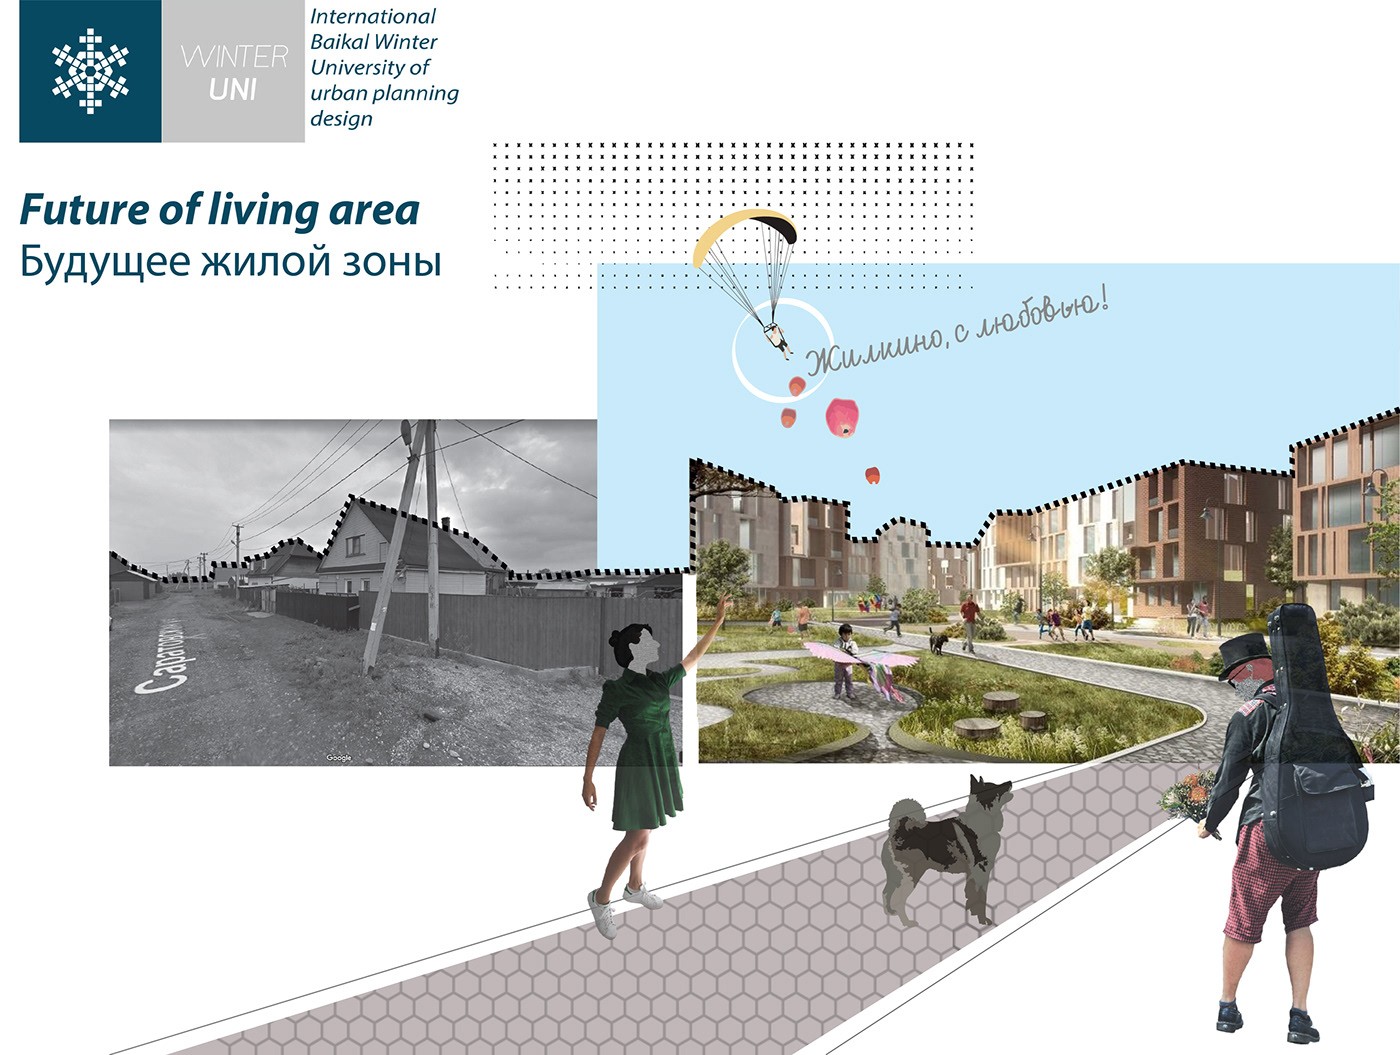 توسعه مجدد مناطق ناراحت کننده (ژیلکینو) |  آزمایشگاه طراحی شهری 49